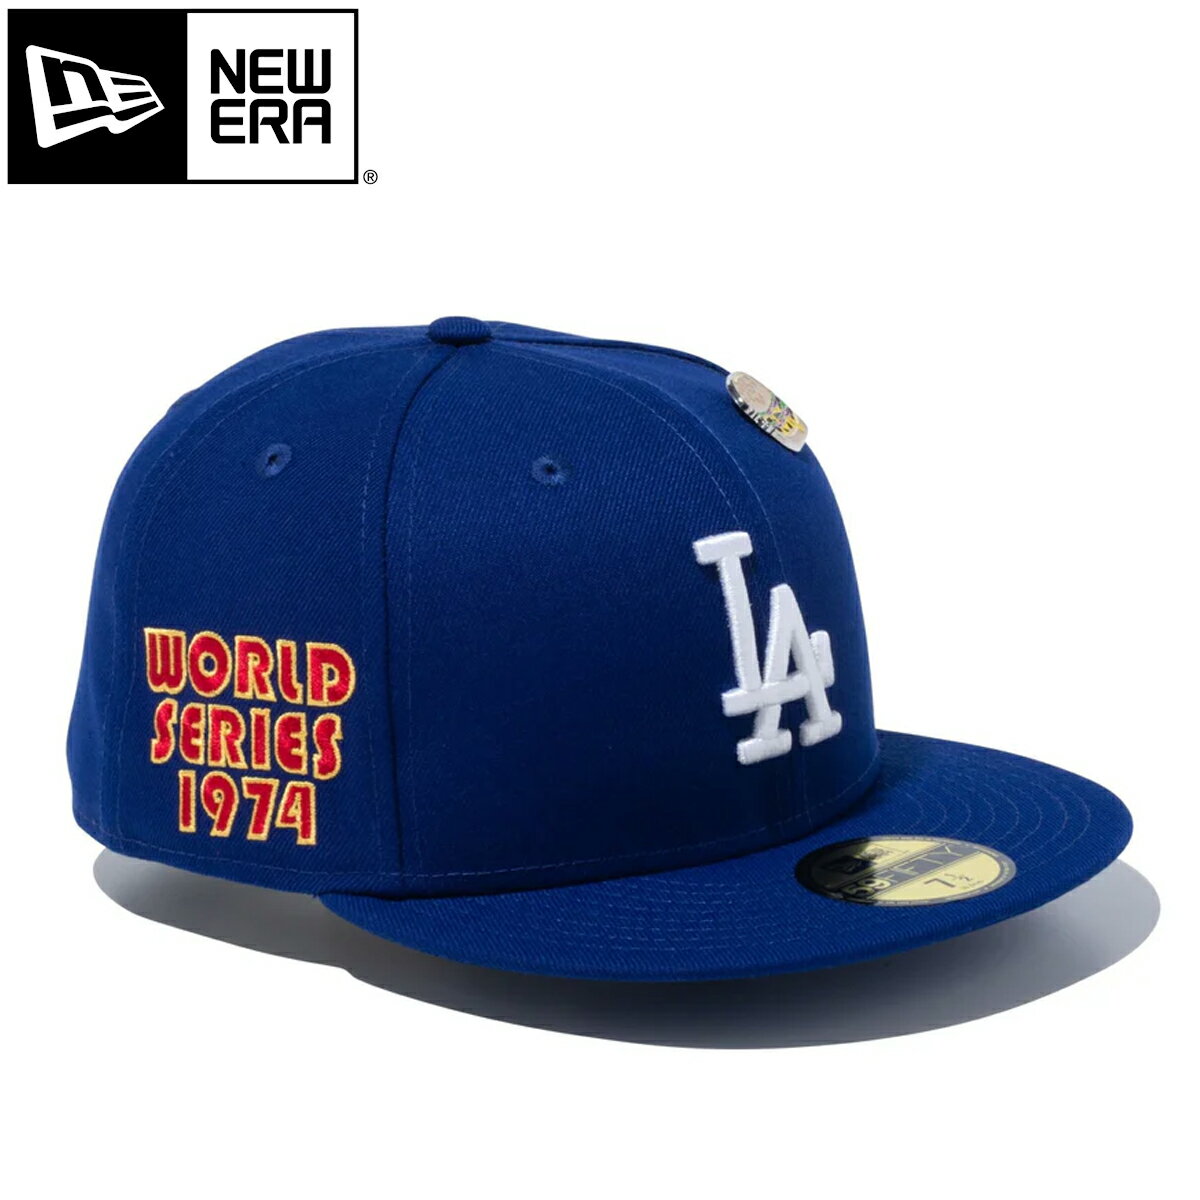 15時迄のご注文で即日発送可 NEW ERA 59FIFTY LOCAL DISHES LOS ANGELES DODGERS ニューエラ 59FIFTY ローカル ディシズ ロサンゼルス・ドジャース メンズ レディース キャップ 帽子 DARK ROYAL ブルー 14109902